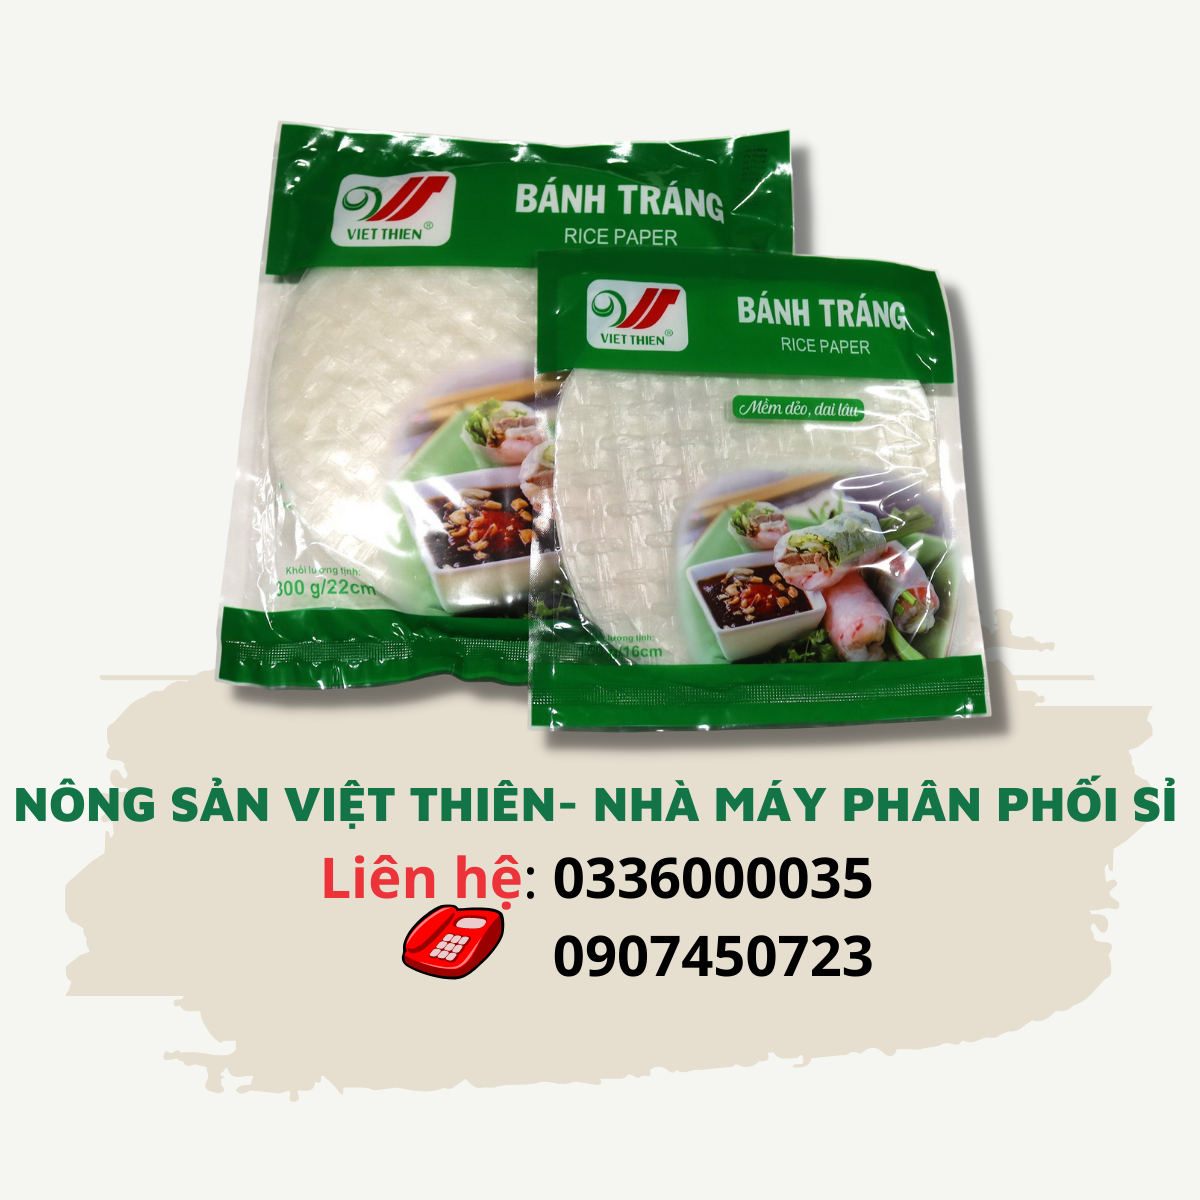 Bánh tráng Việt Thiên 22cm, nhà máy sản xuất và phân phối nông sản Việt Thiên, giá rẻ